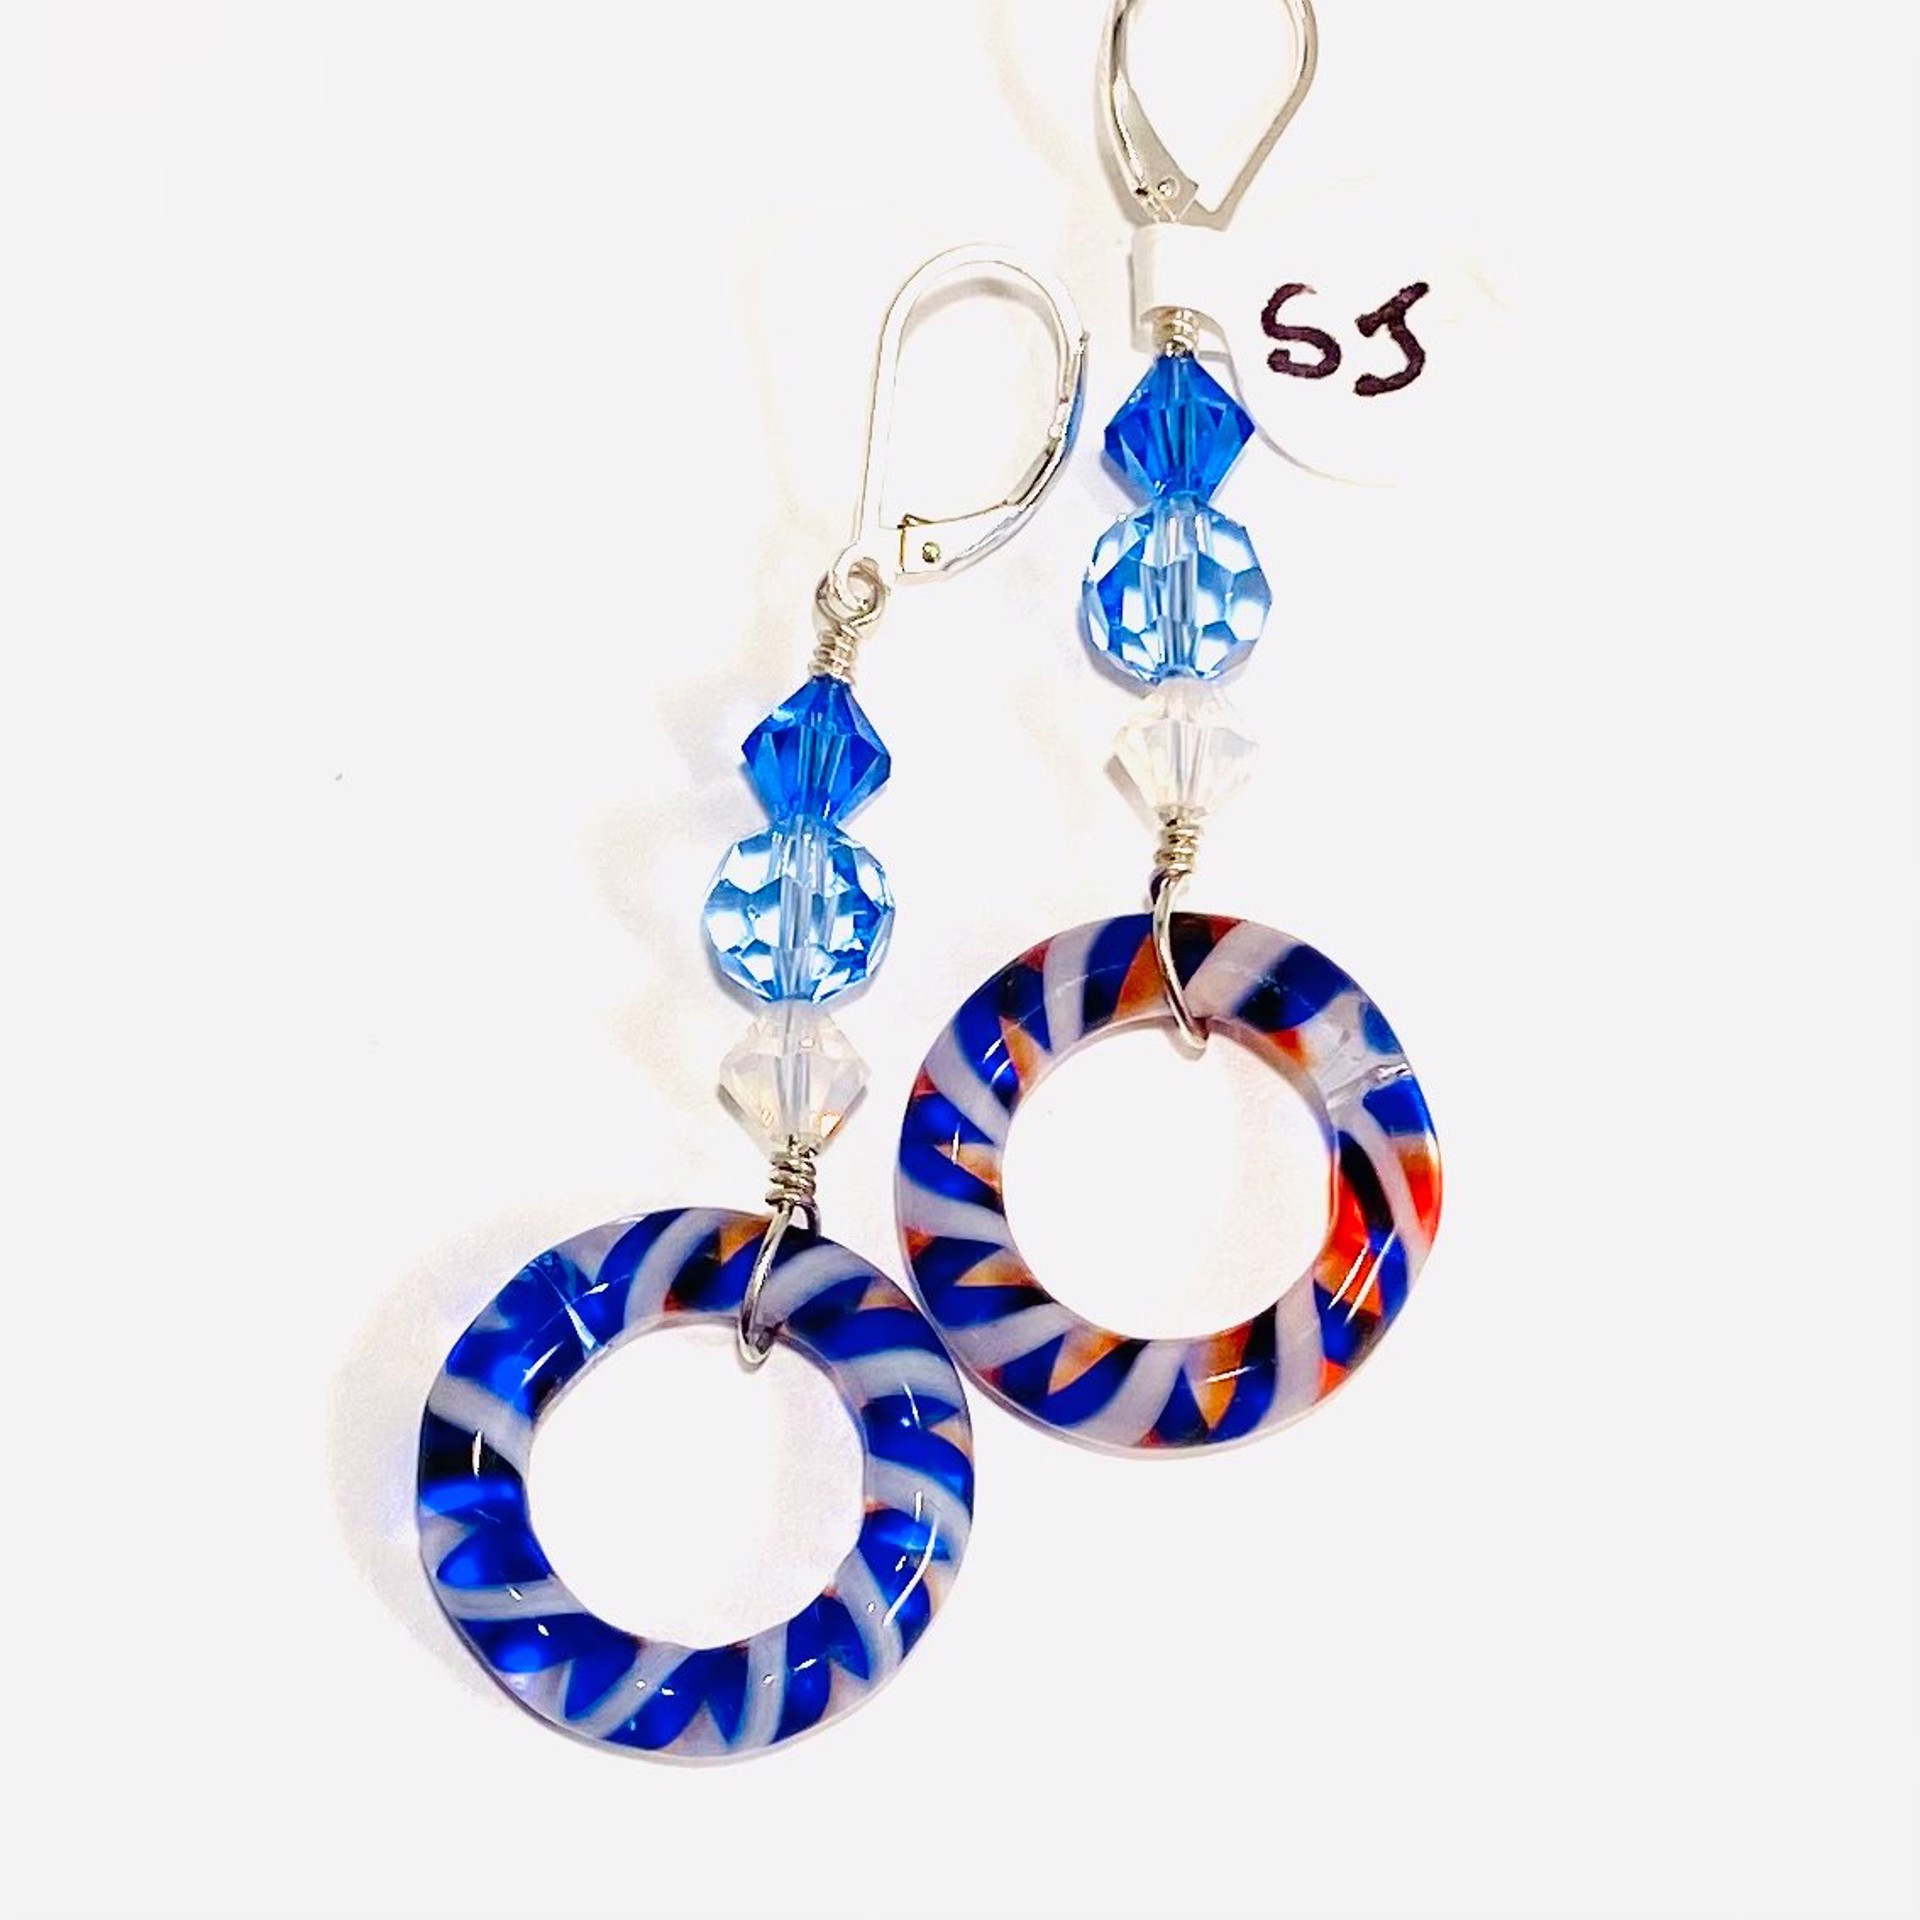 Art Glass Rings in Blue Earrings SHOSH22-19 by Shoshannah Weinisch